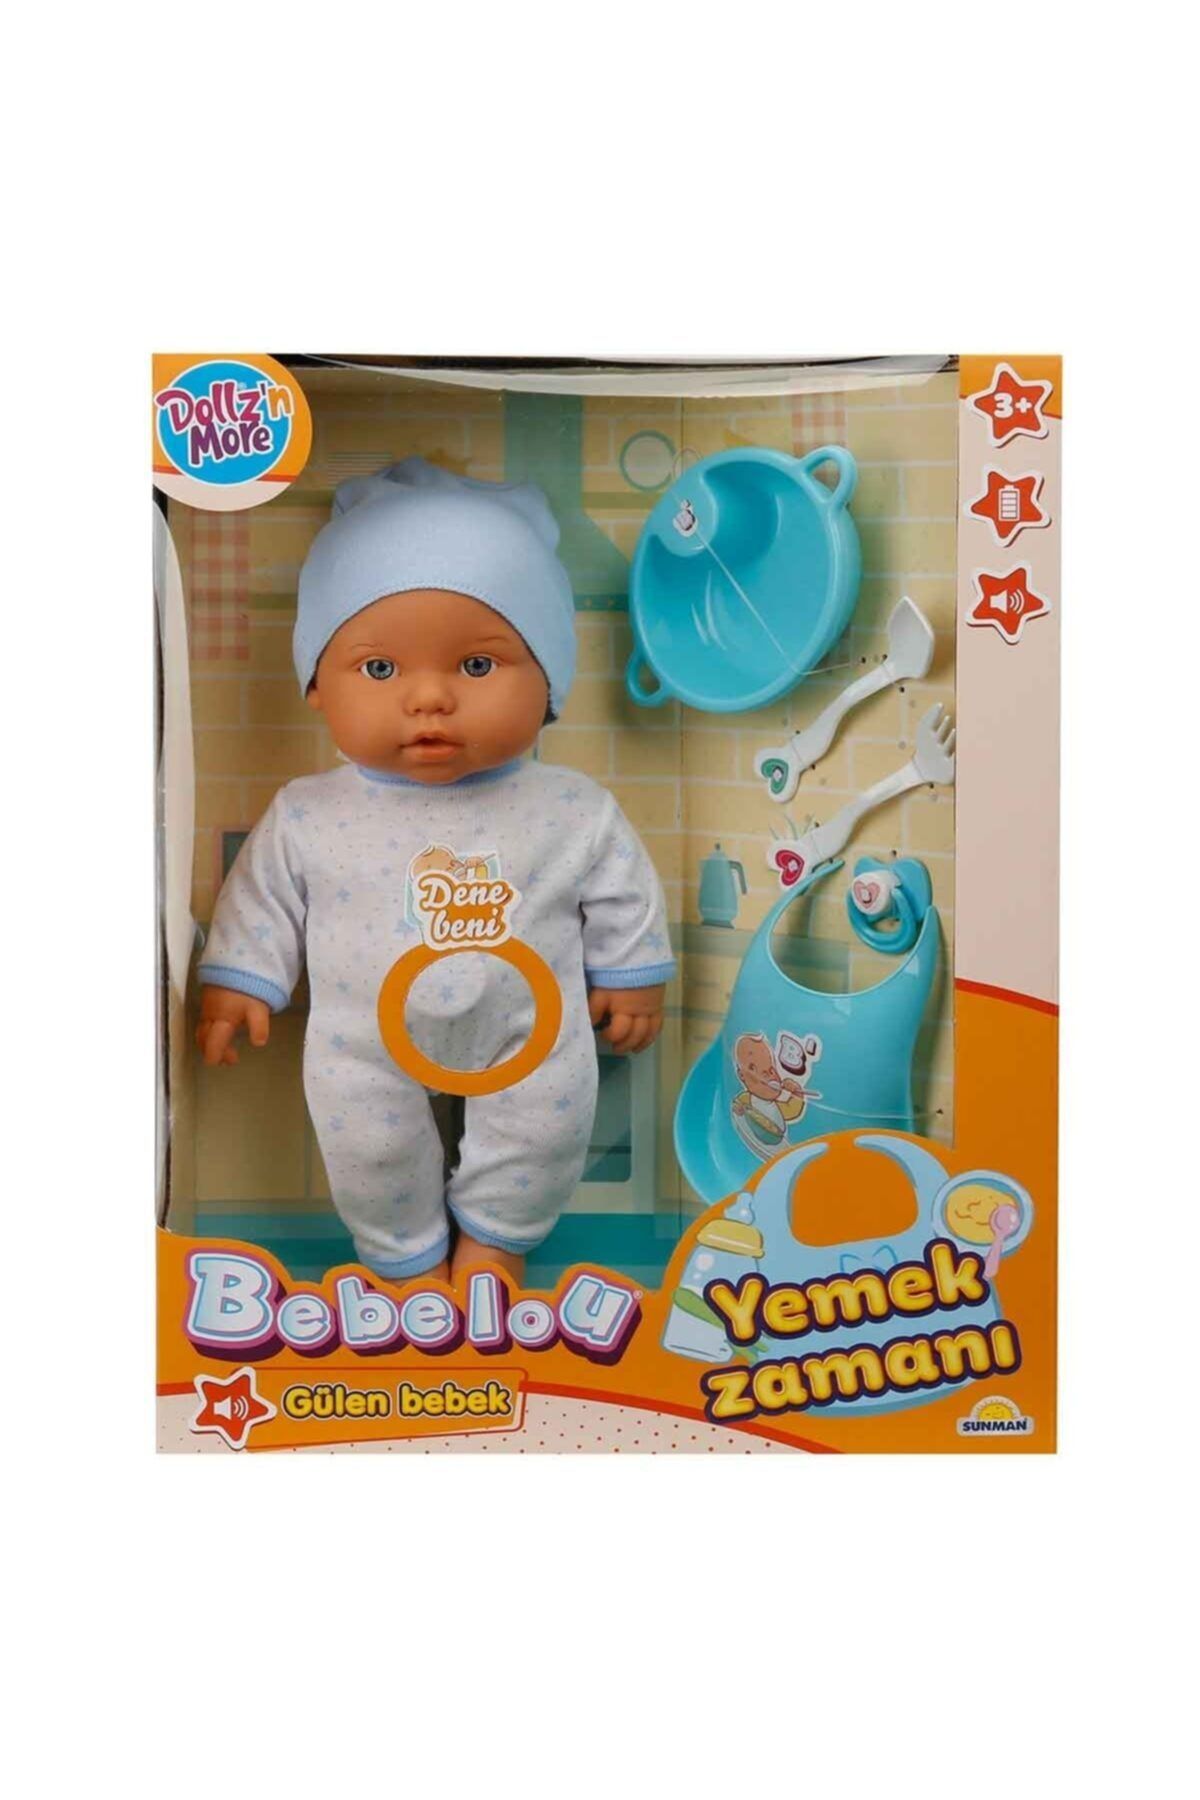 Sunman Bebelou Yemek Zamanı Sesli Bebek Seti 35 Cm. - Mavi